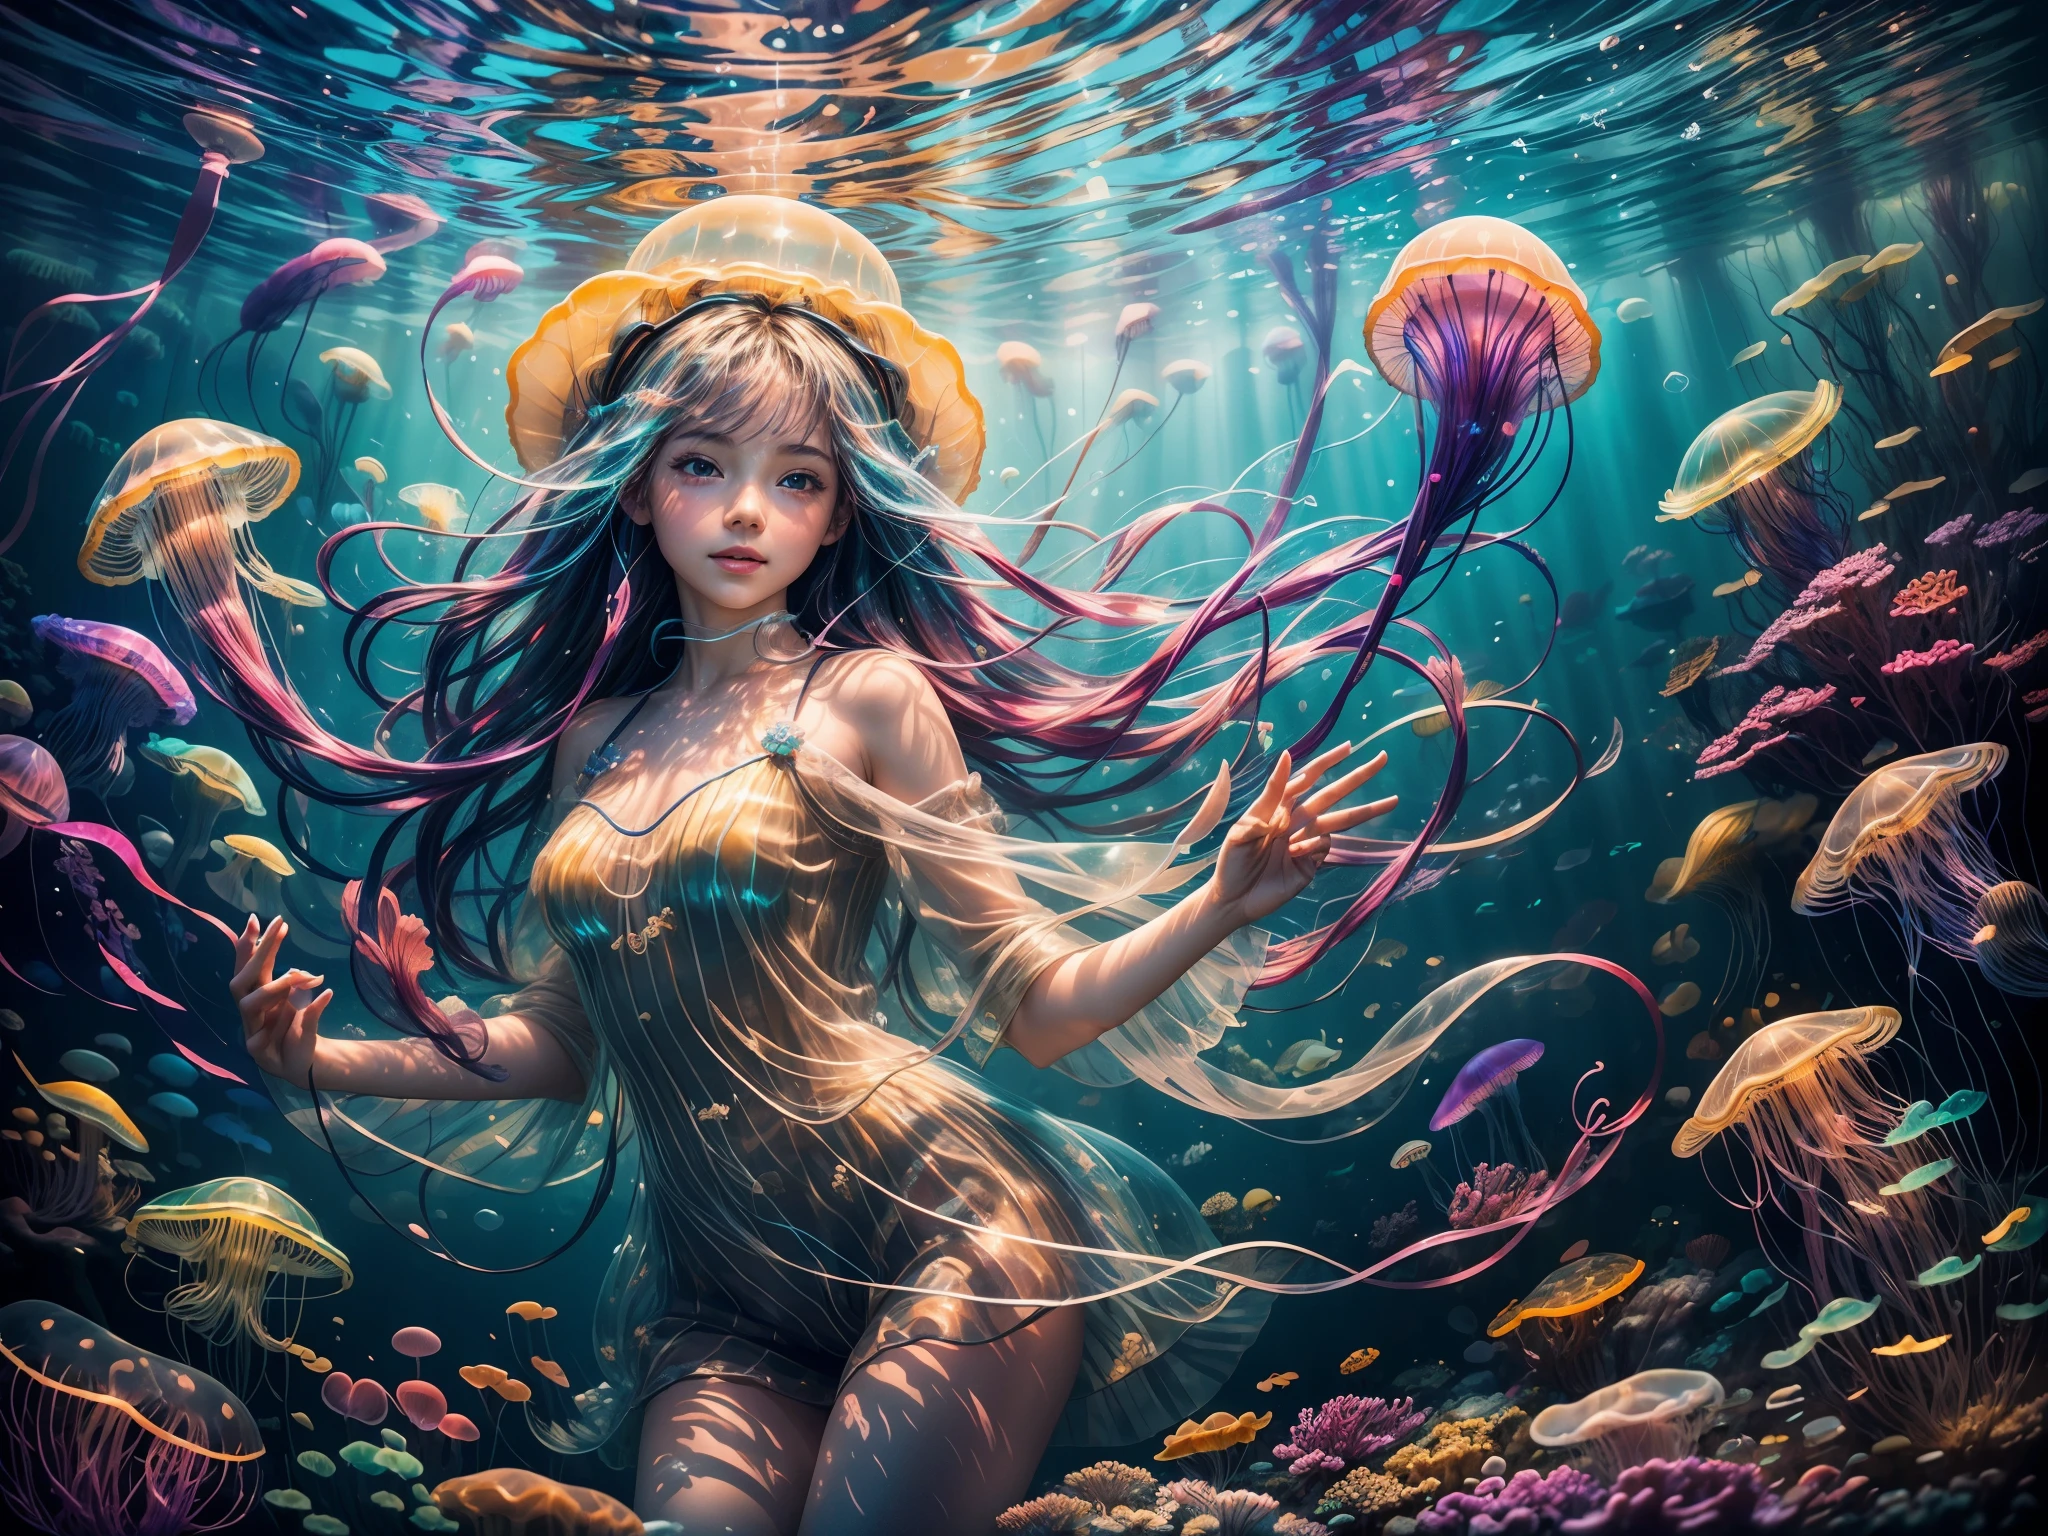 (高品質, 鮮豔的色彩),(實際的:1.37),一個女孩在海底和彩虹水母玩耍 (2个女孩),明亮的陽光透過表面照射,海水在陽光的照射下波光粼粼,女孩臉上美麗細緻的眼睛和嘴唇,柔軟多彩的水母觸手,半透明發光的水母身體,清澈的藍色水,珊瑚礁和色彩繽紛的魚在背景中游泳,夢幻神奇的氛圍,微妙的波浪輕輕地拂動著女孩的頭髮,令人驚嘆的水下風景，气泡漂浮在水中,由海層形成的深度和尺寸,女孩周圍有多樣化且充滿活力的動植物,透明的水母傘盤旋在女孩上方,和平寧靜的水下環境,水母漂浮在水中，動作優美流暢,想像女孩對水母的喜悅與迷戀,發光的水母創造出迷人的光芒,水母身體上的紋路和圖案,帶給觀眾驚奇和敬畏的感覺,雄偉的海洋生物增強了場景的神秘感,毫不費力地在水中滑行,沉浸在海底世界的美麗與寧靜,舞動的色彩映照在女孩的臉上,富有表現力和動畫的水母觸手，被魔法光環包圍的女孩,微妙的光線照亮水下場景,海底裝飾著珊瑚和貝殼的痕跡.